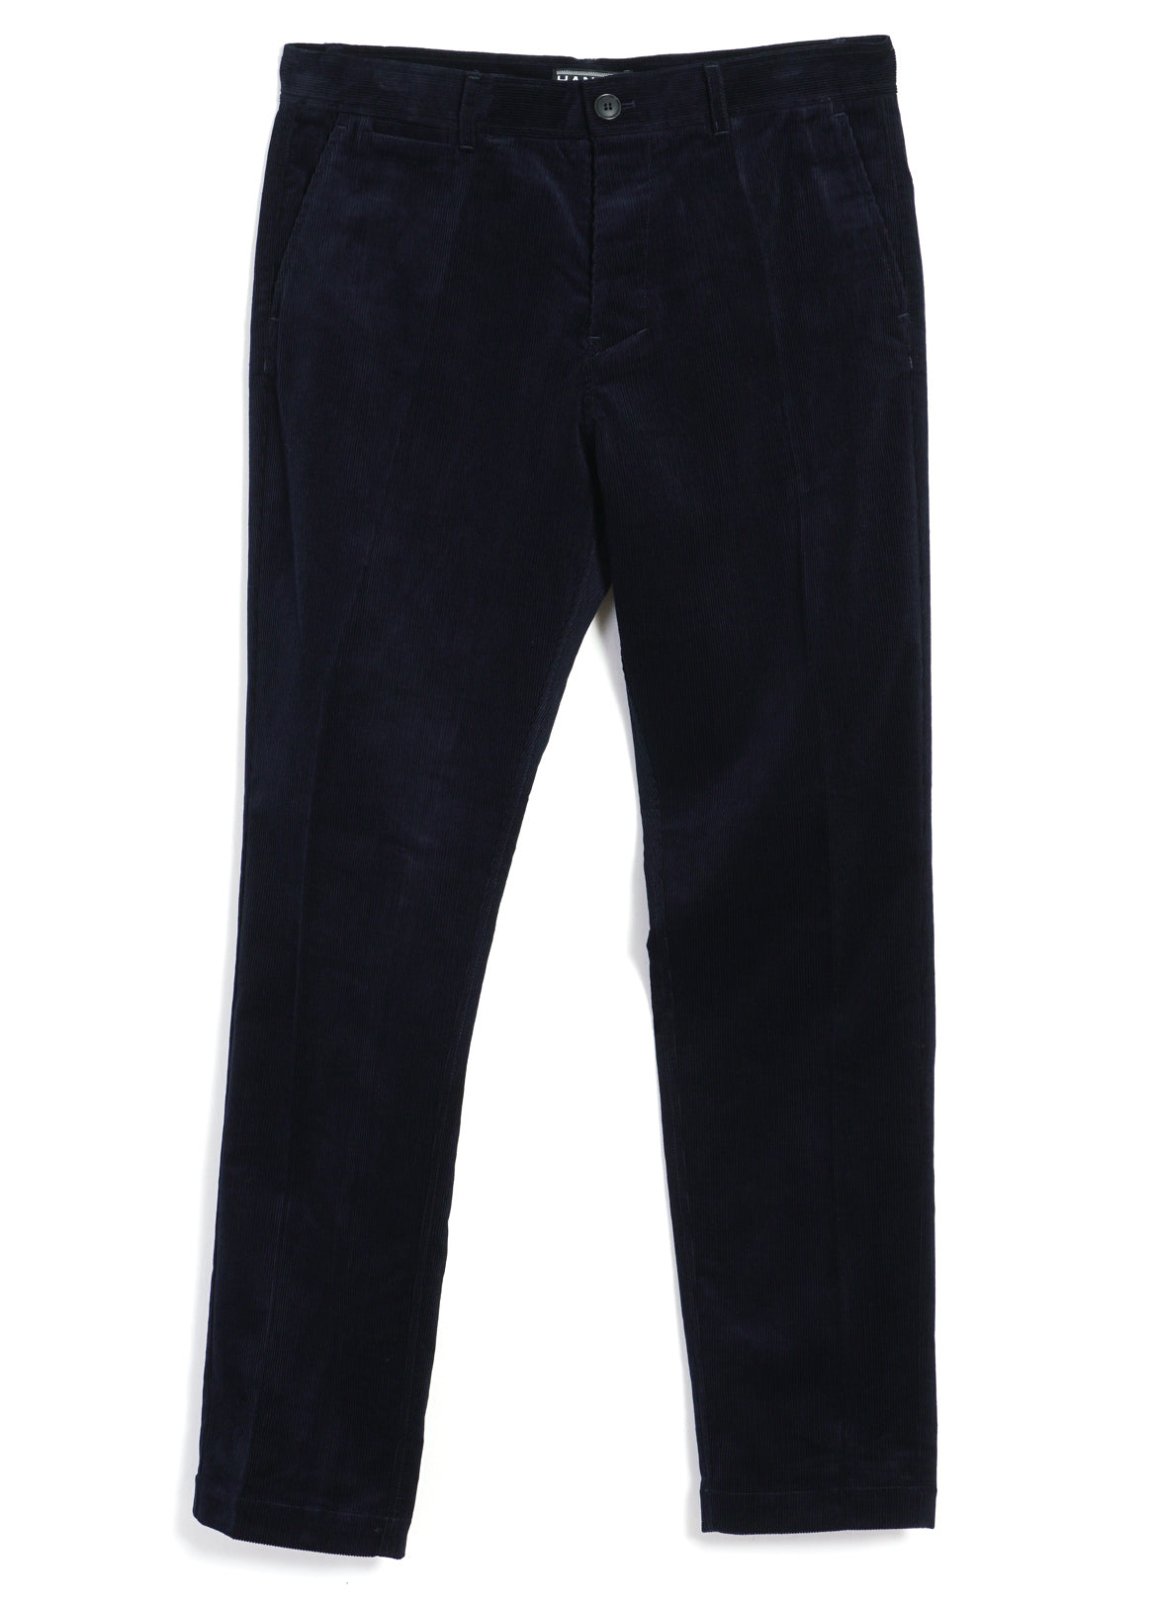 HANSEN GARMENTS - FRED | Regular Fit Trousers | Fluid Navy - HANSEN Garments